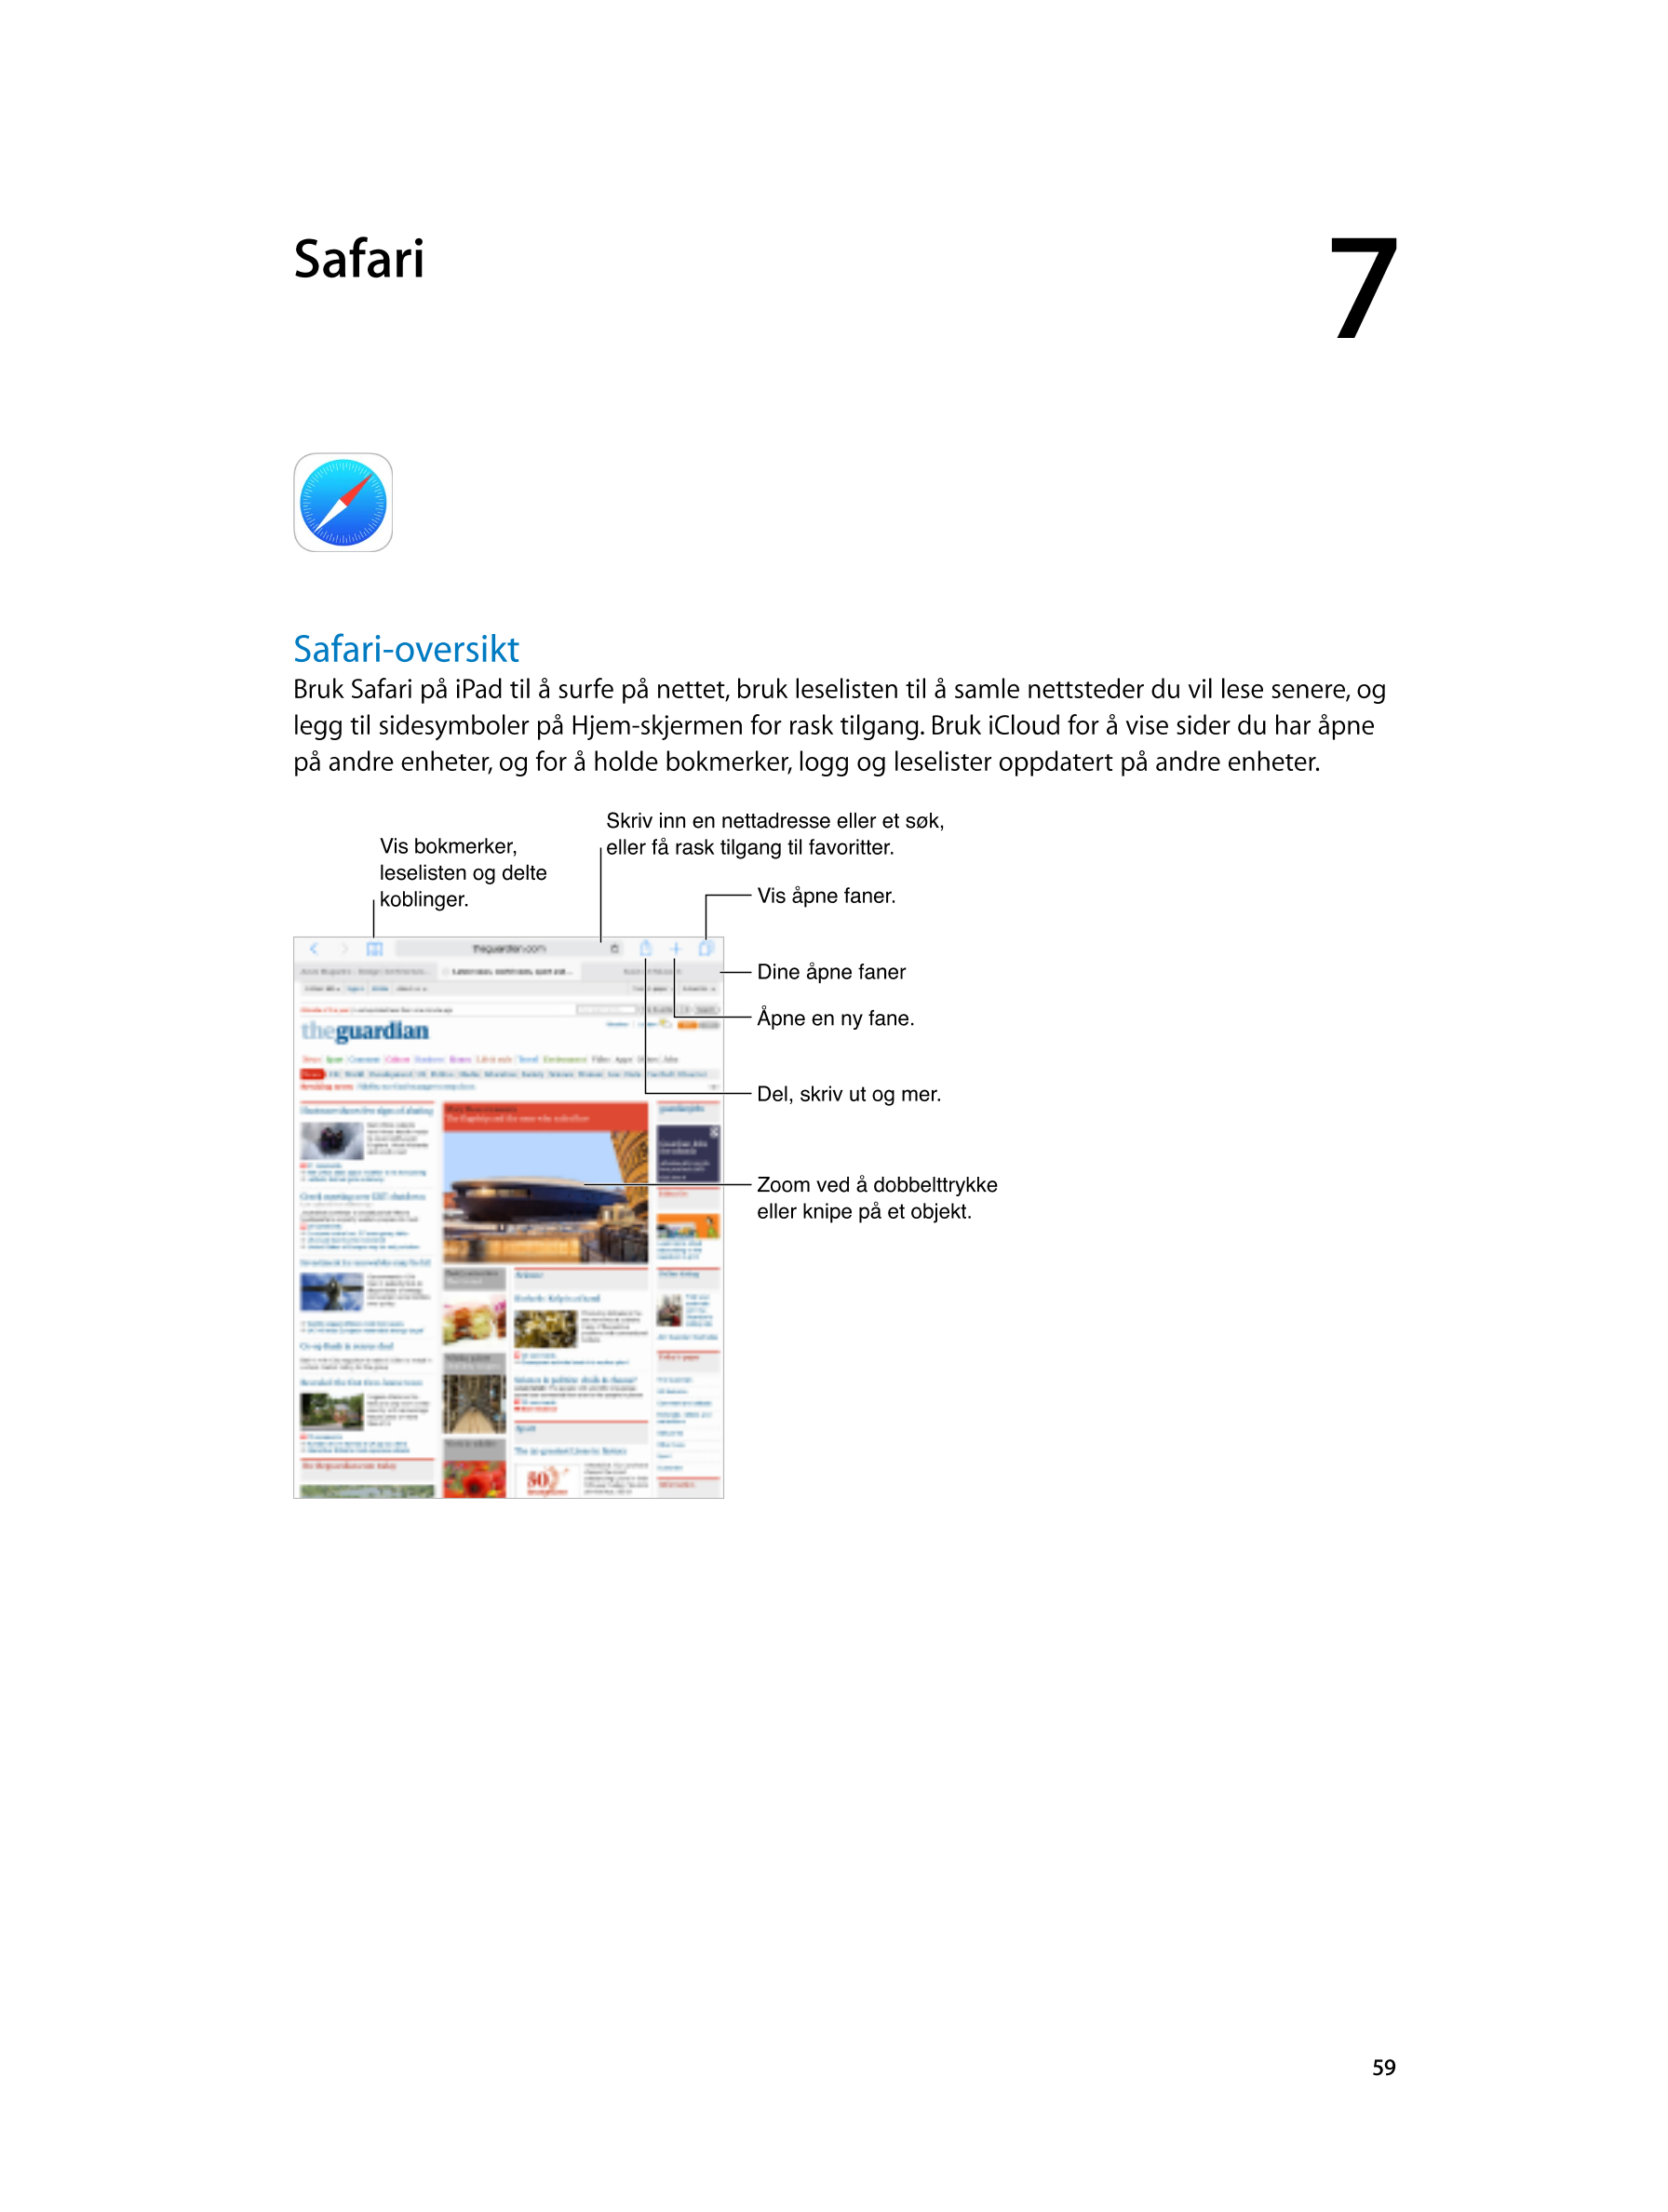  Safari 7  
Safari-oversikt
Bruk Safari på iPad til å surfe på nettet, bruk leselisten til å samle nettsteder du vil lese senere